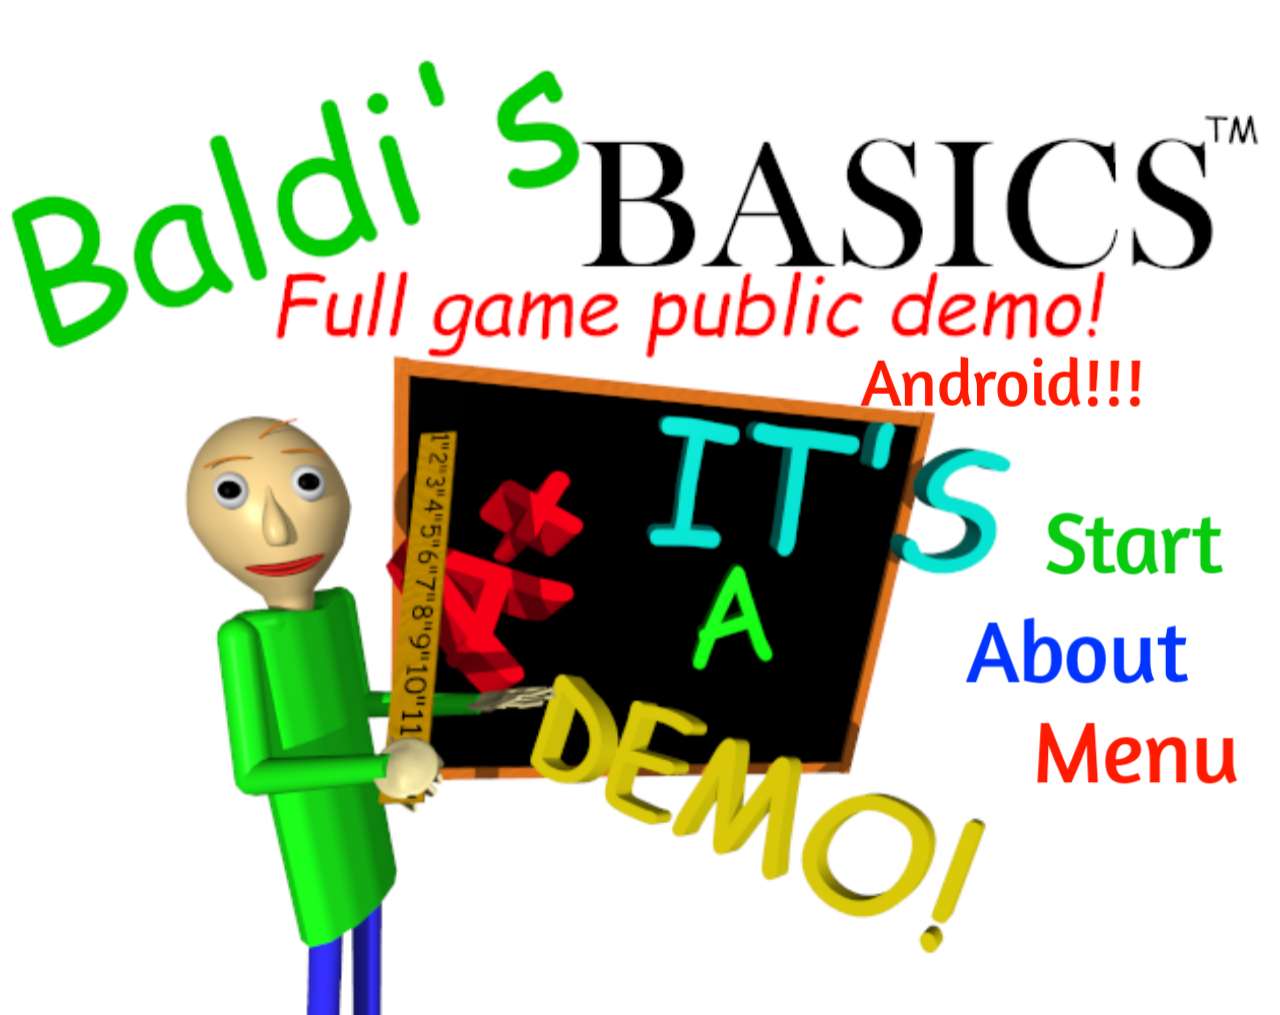 БАЛДИ игра. Игра Baldi's Basics. Обложка Baldi s Basics. БАЛДИ логотип игры. Baldis basics game public demo